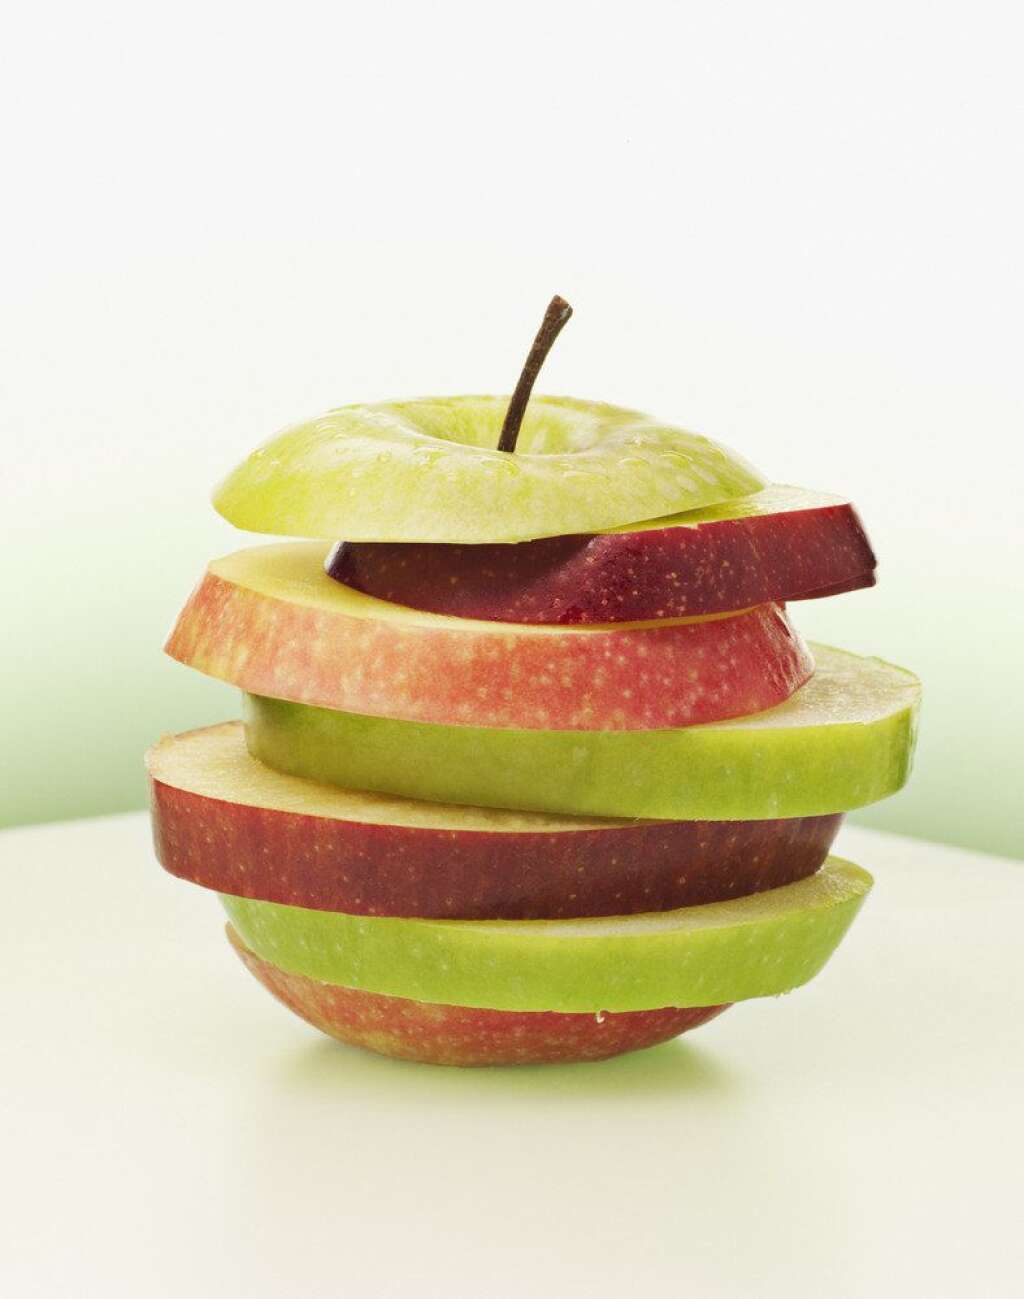 La pomme - La pomme ne contient que très peu de calories. Autre atout majeur, ce fruit est gorgé de pectines qui ont la propriété de stabiliser le taux de sucre dans le sang. Un procédé qui joue sur l'appétit.